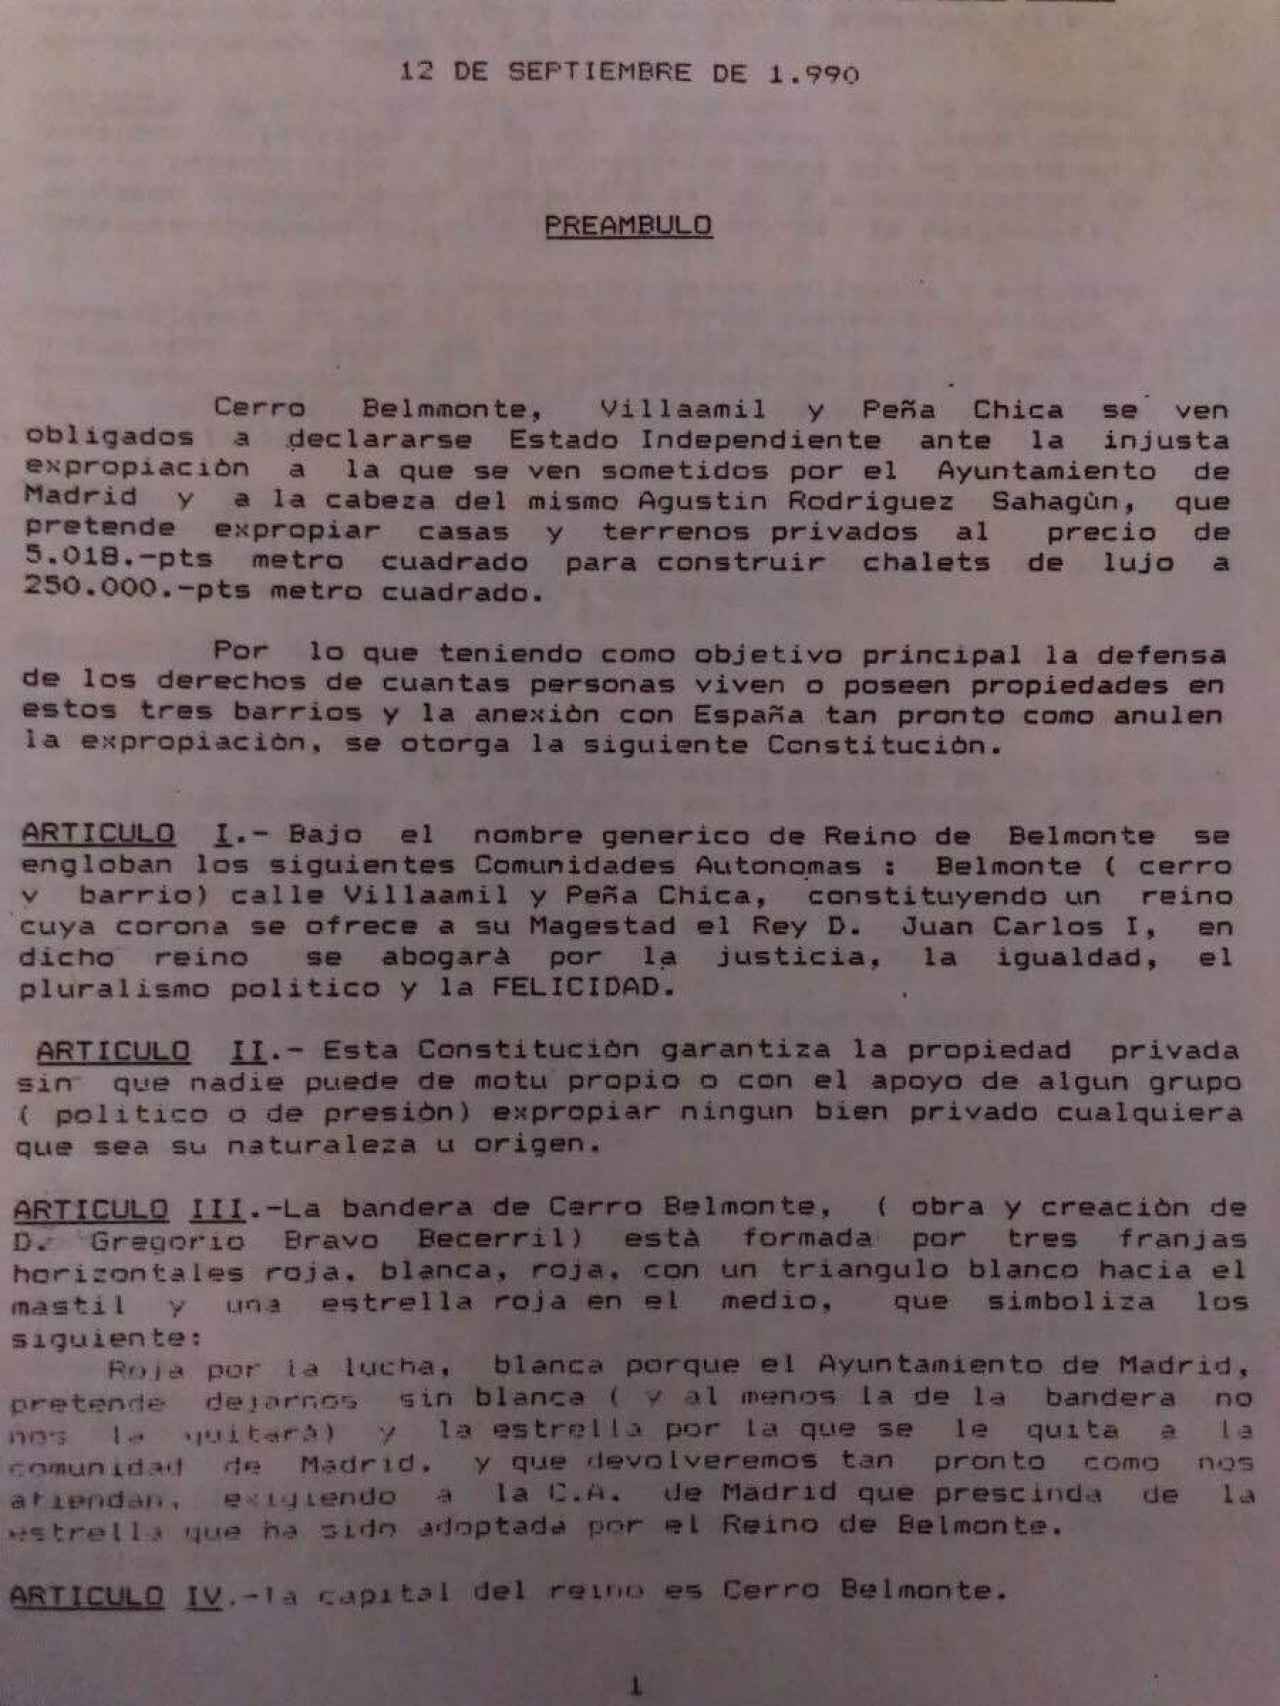 Primera hoja de la Constitución de Cerro Belmonte, aprobada tras referéndum en septiembre del 90.